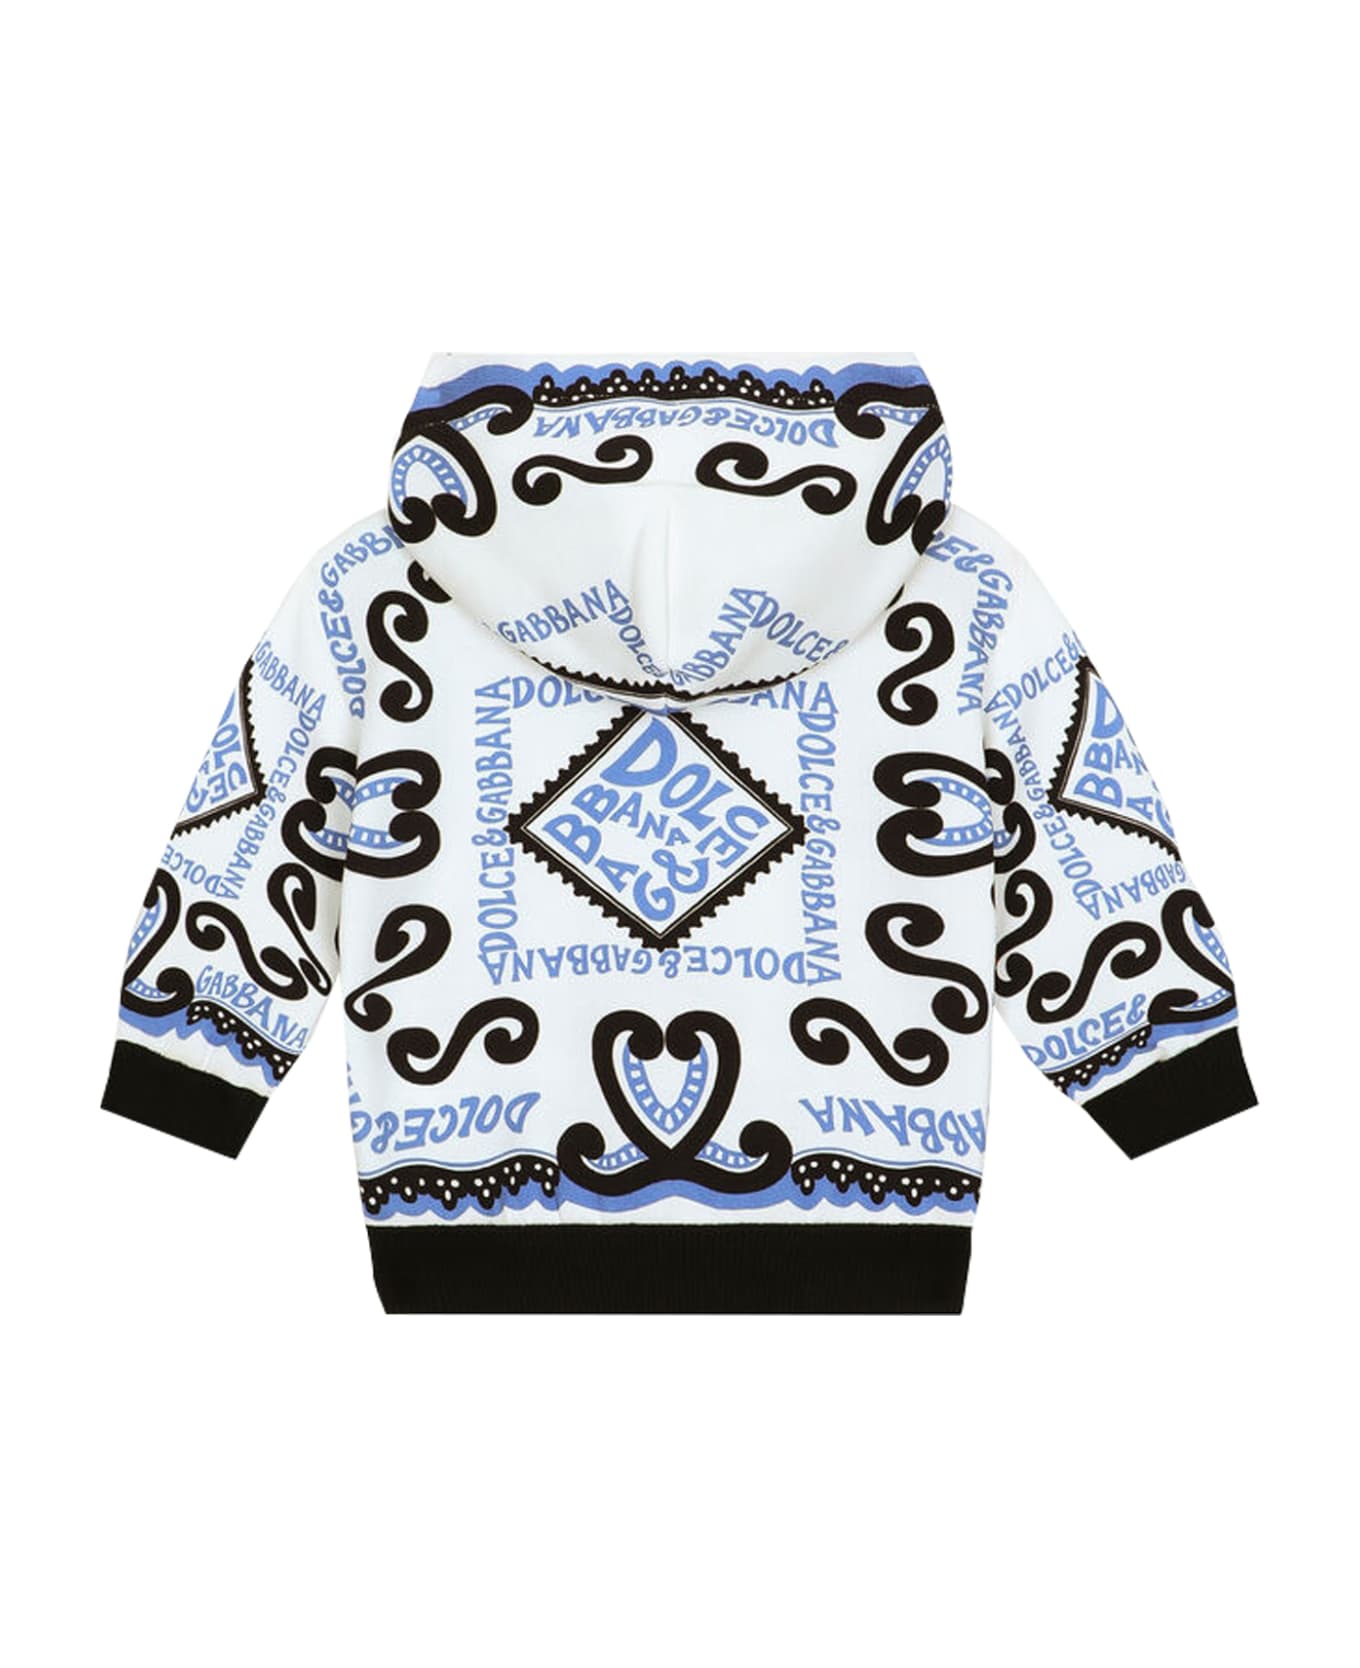 Dolce & Gabbana Zip-up Sweatshirt With Navy Print Hood - Multicolor